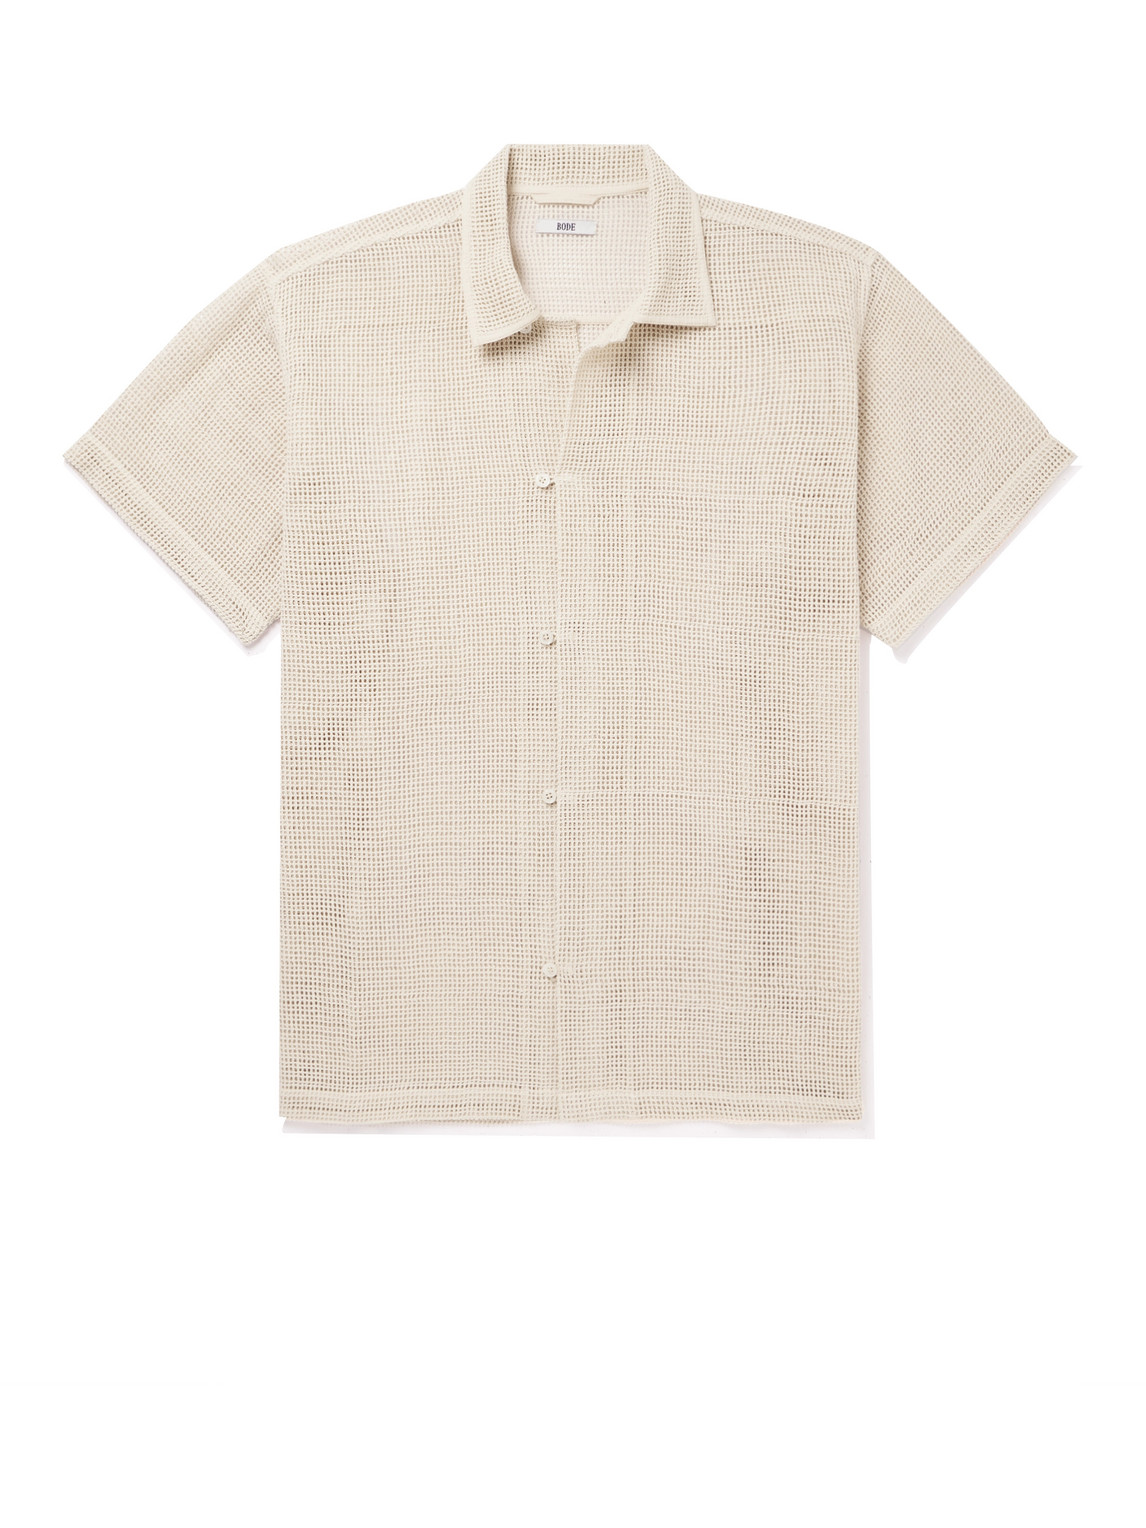 Bode Macramé Cotton Shirt In Neutrals